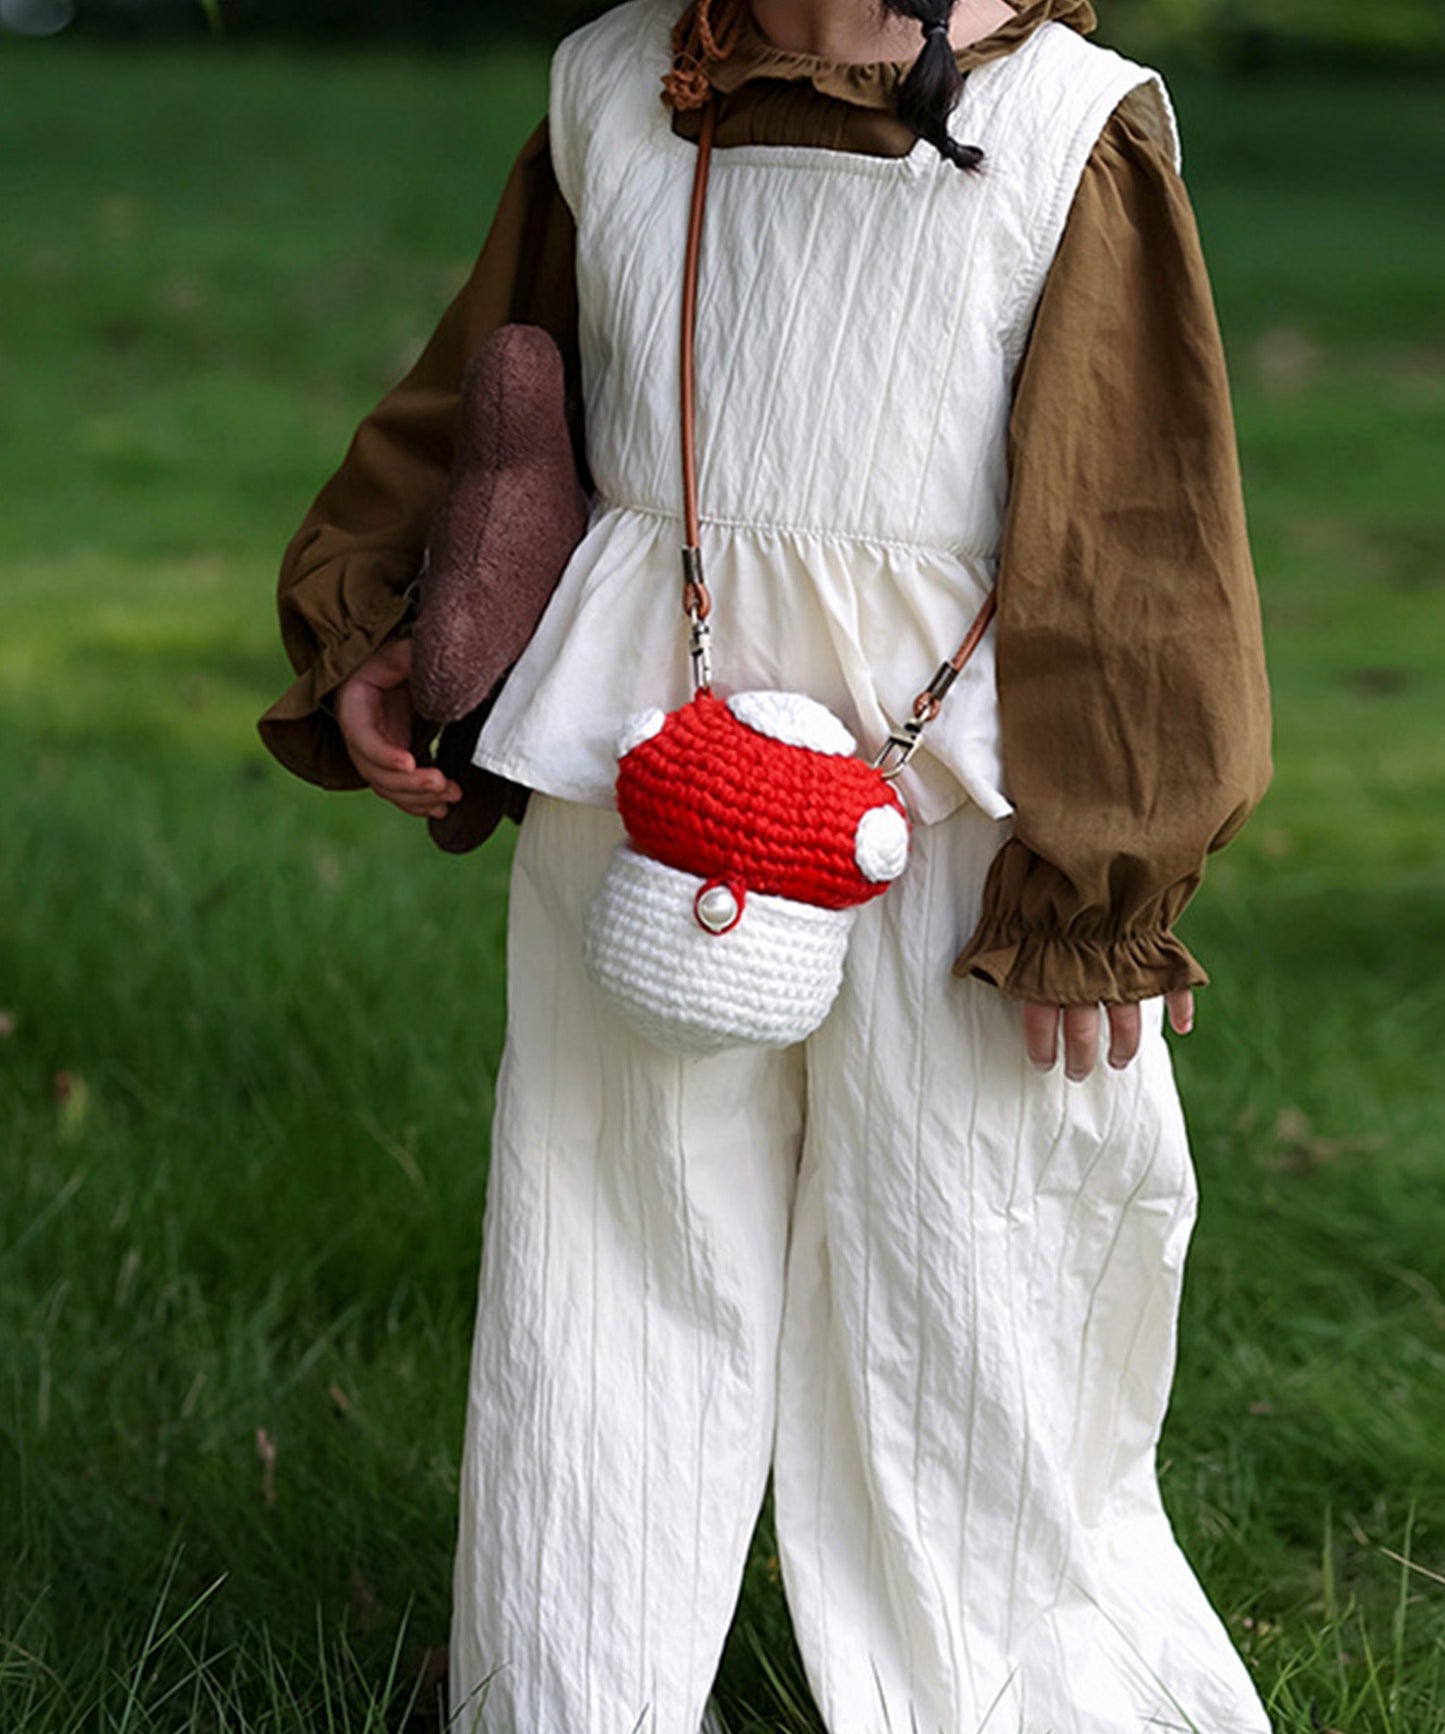 【aimoha-KIDS-】韓国子供服 かわいいキノコニット編みショルダーバッグ